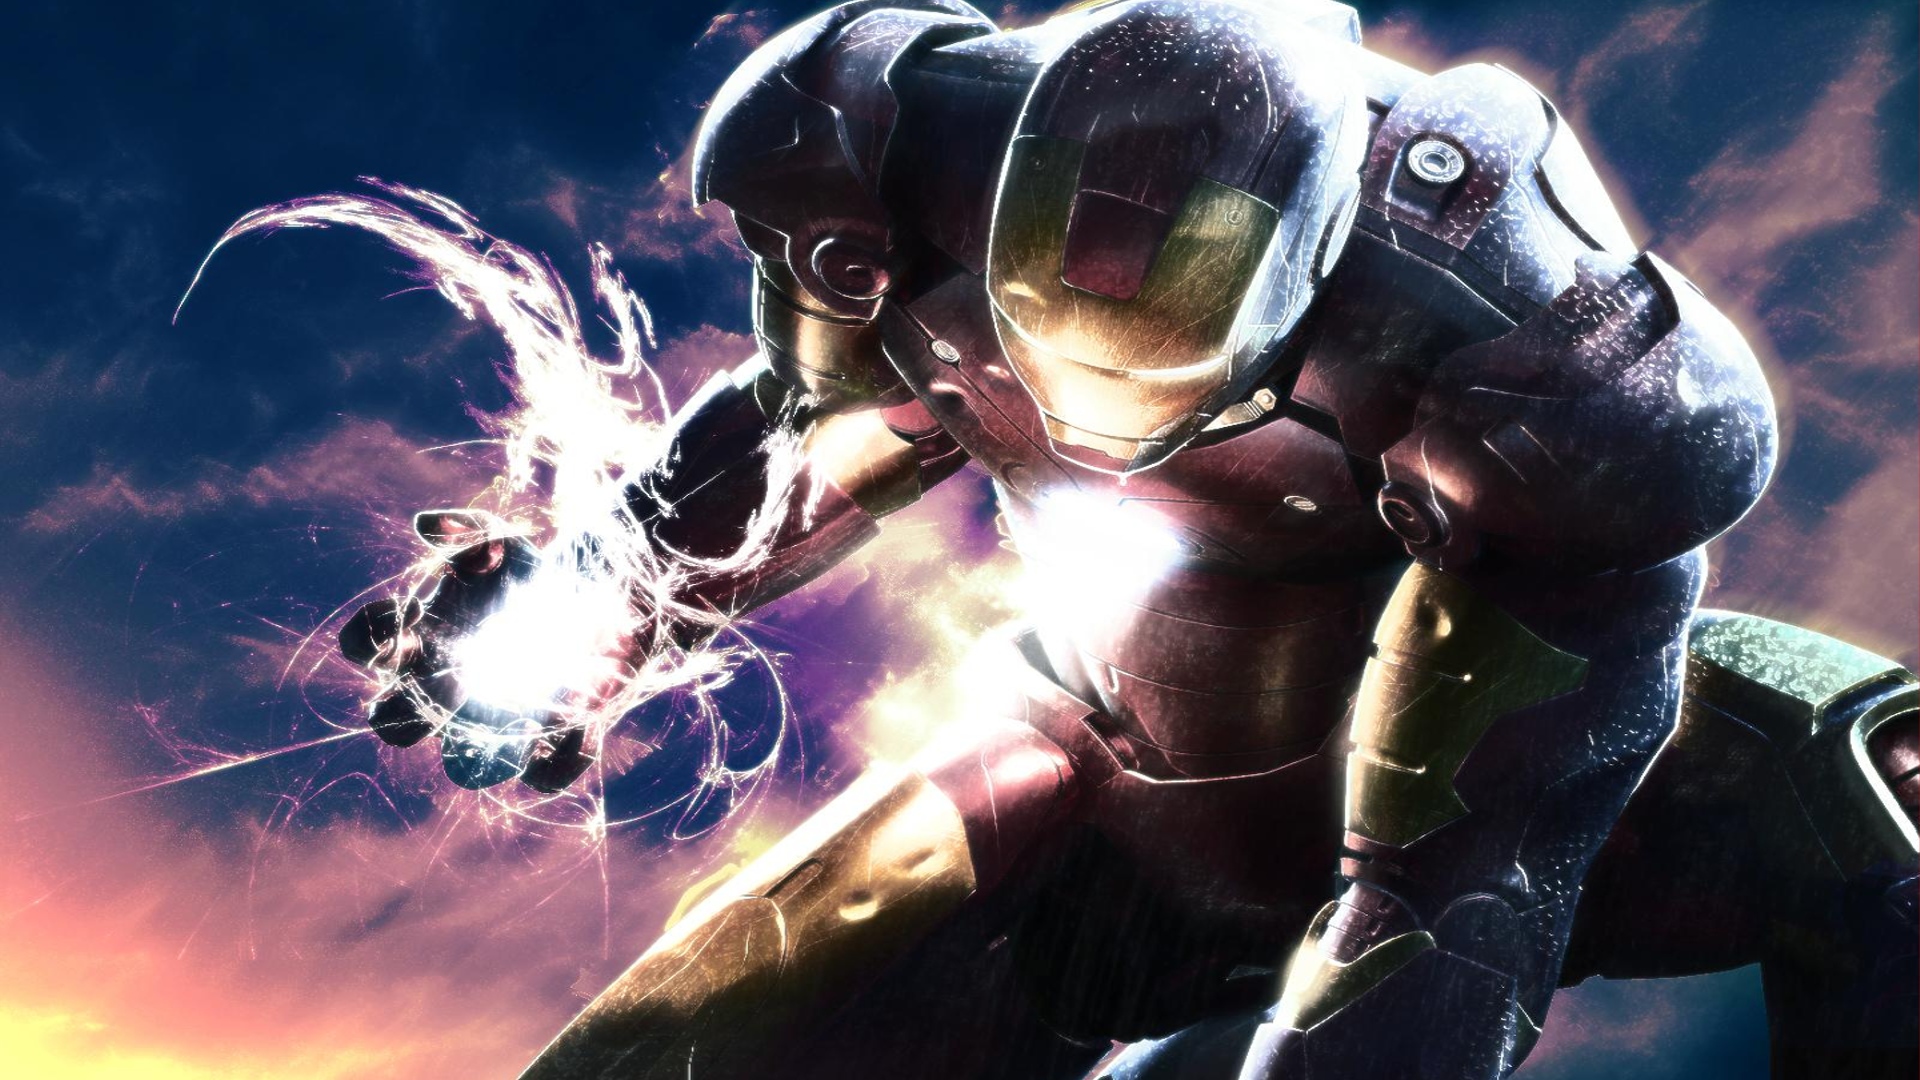 Iron Man Images Free Download